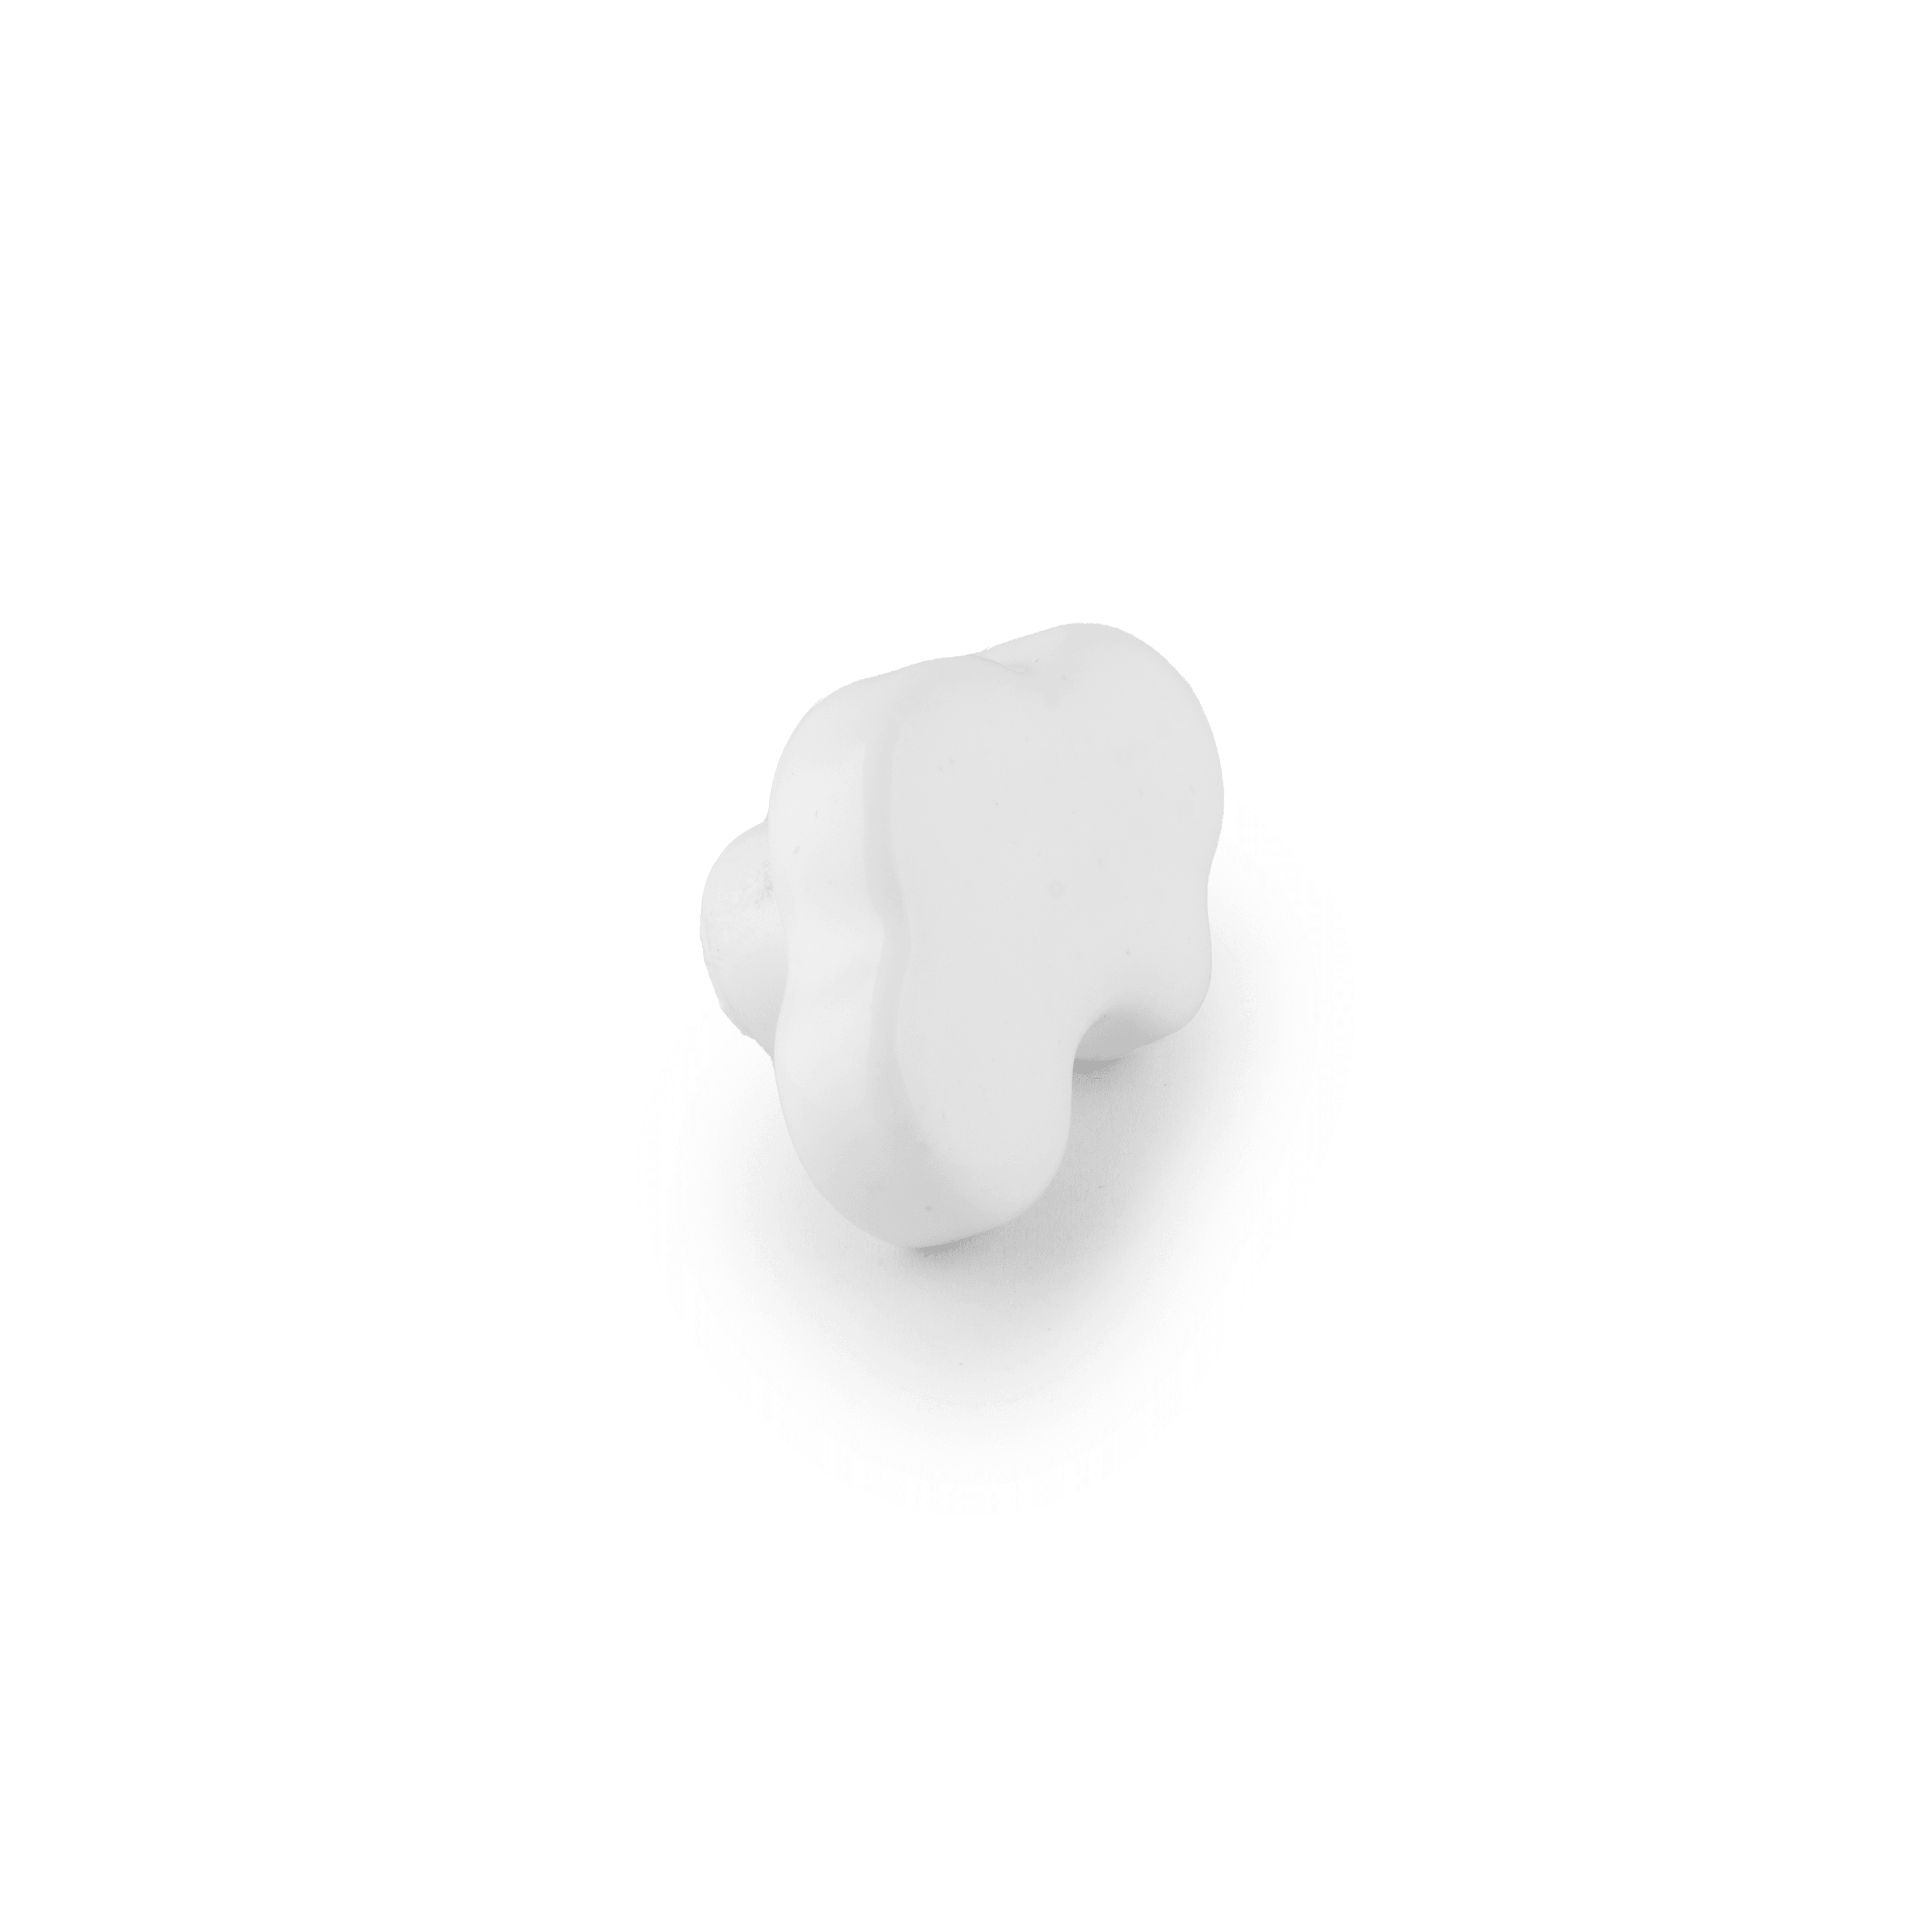 Cloud knob Knob 46mm / White - M A N T A R A